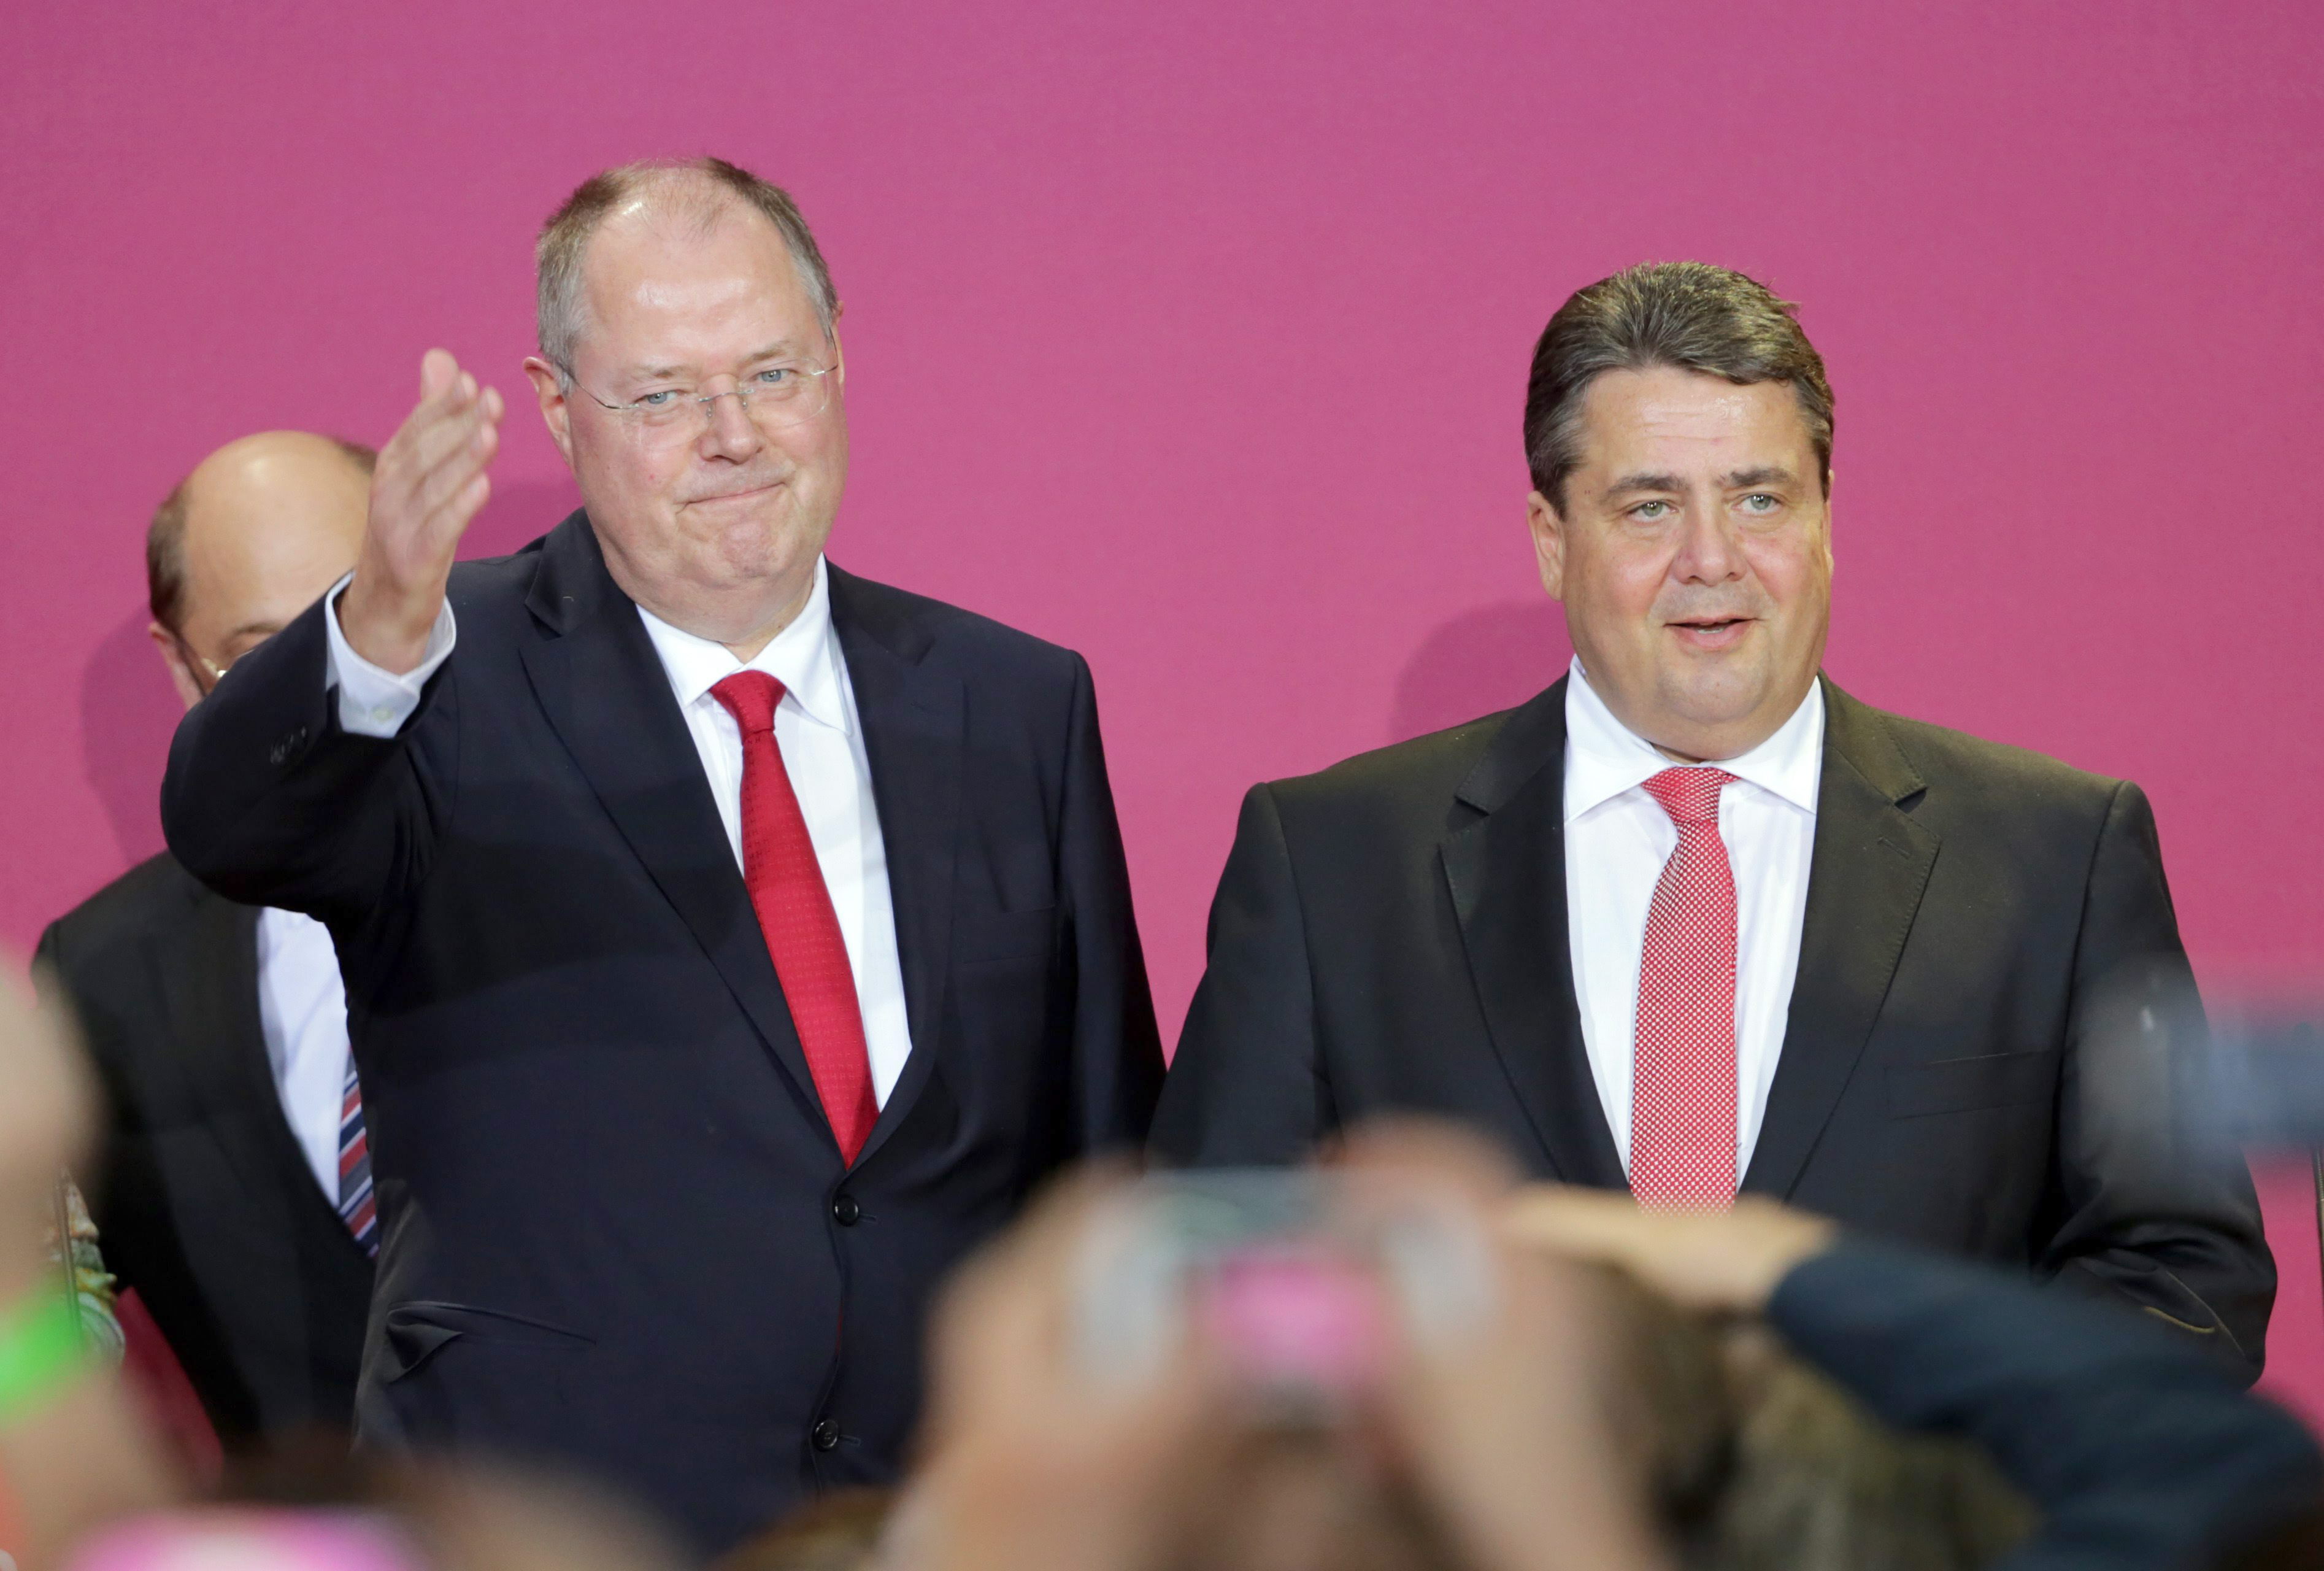 Los Socialdemócratas felicitan a Merkel, pero la desafían a buscar su mayoría